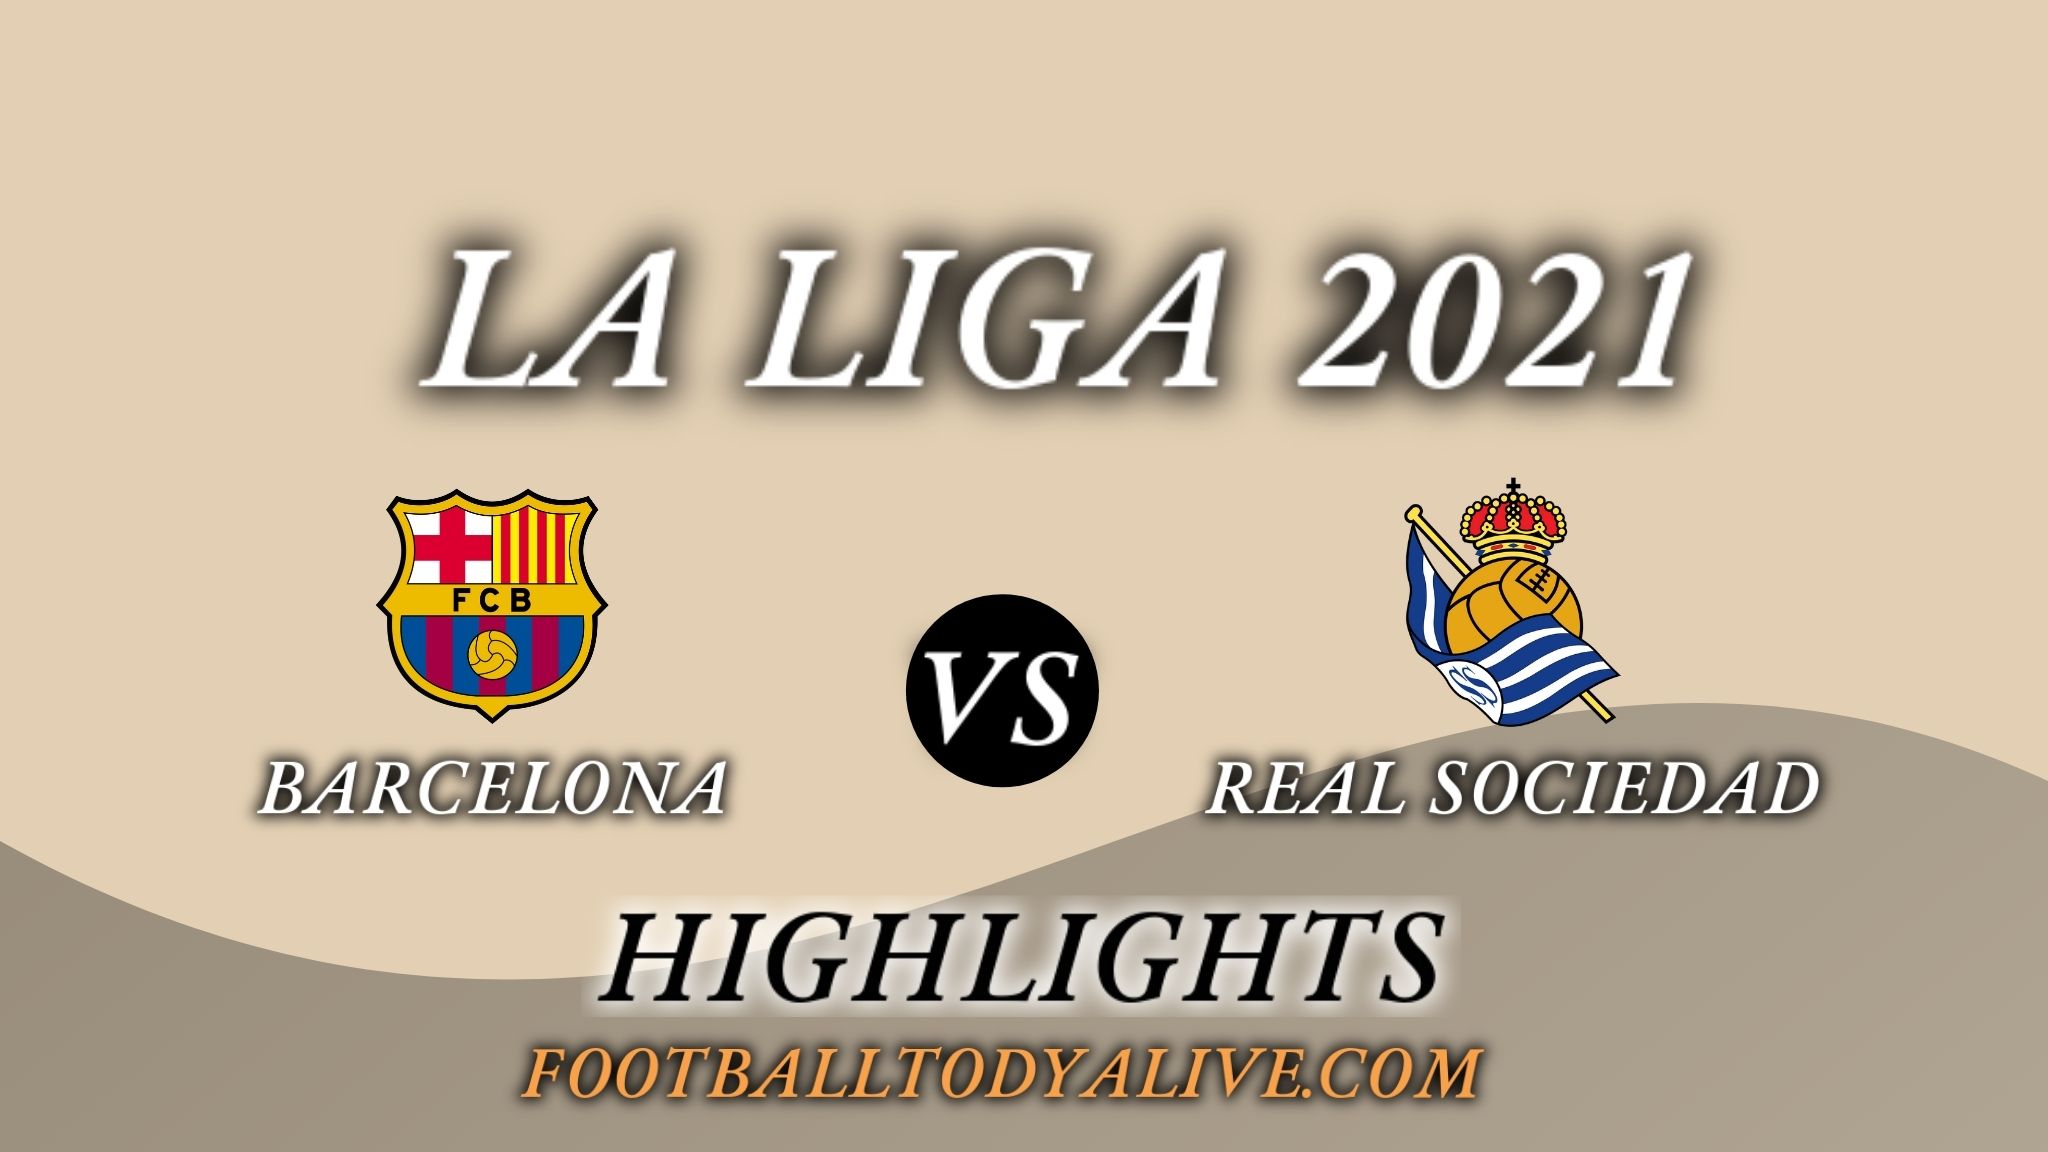 Barcelona Vs Real Sociedad Highlights 2021